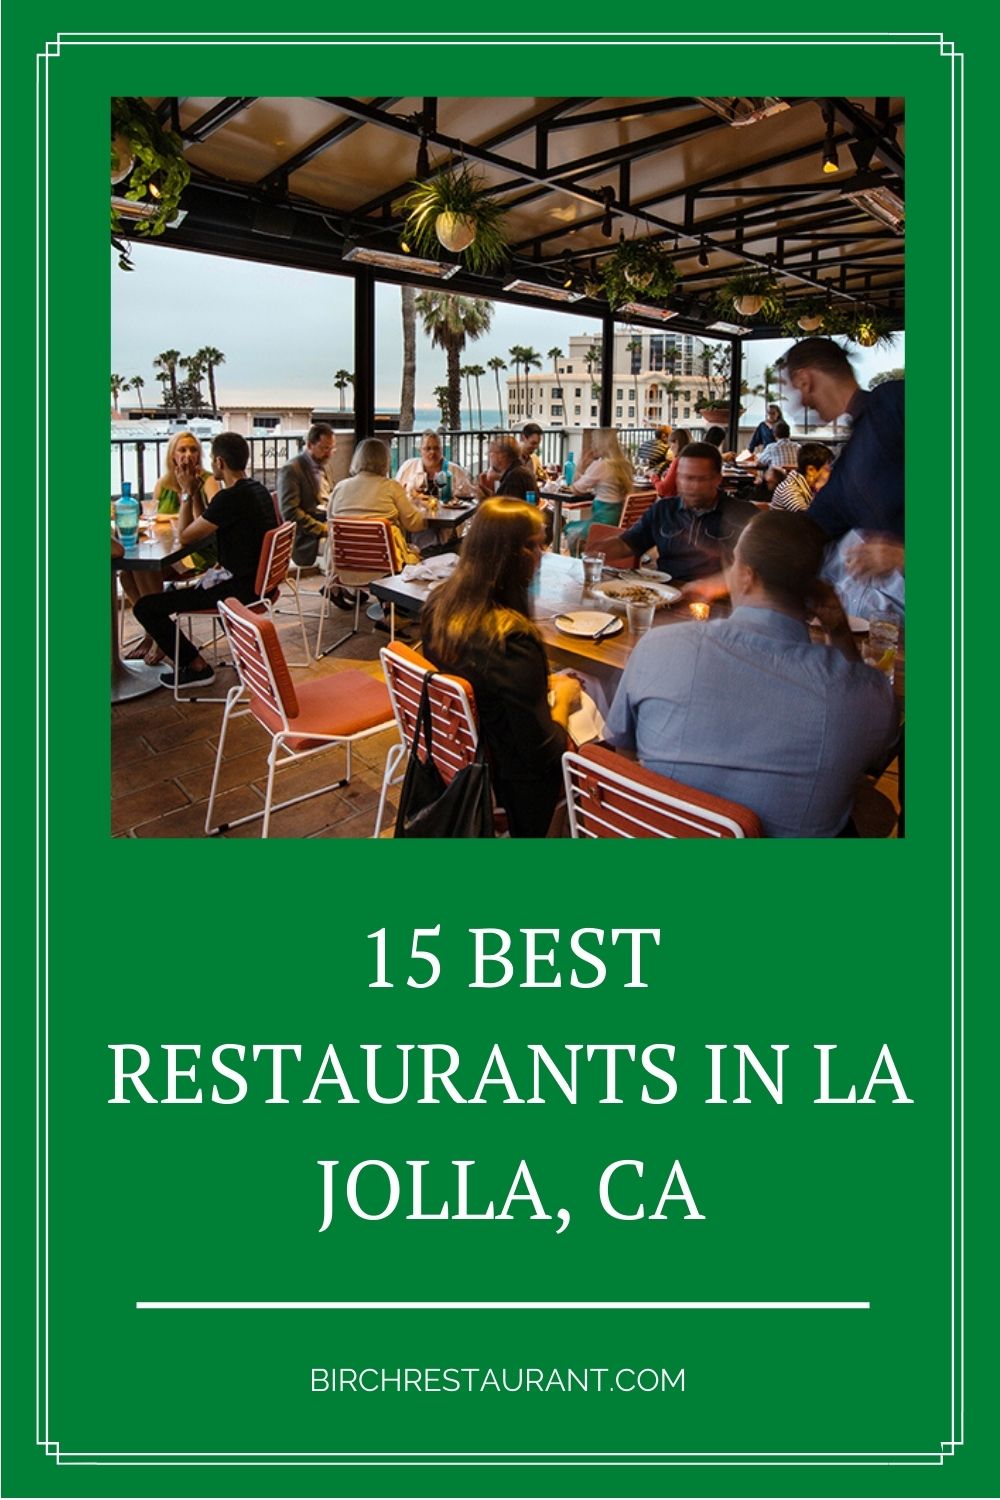 Best Restaurants in La Jolla